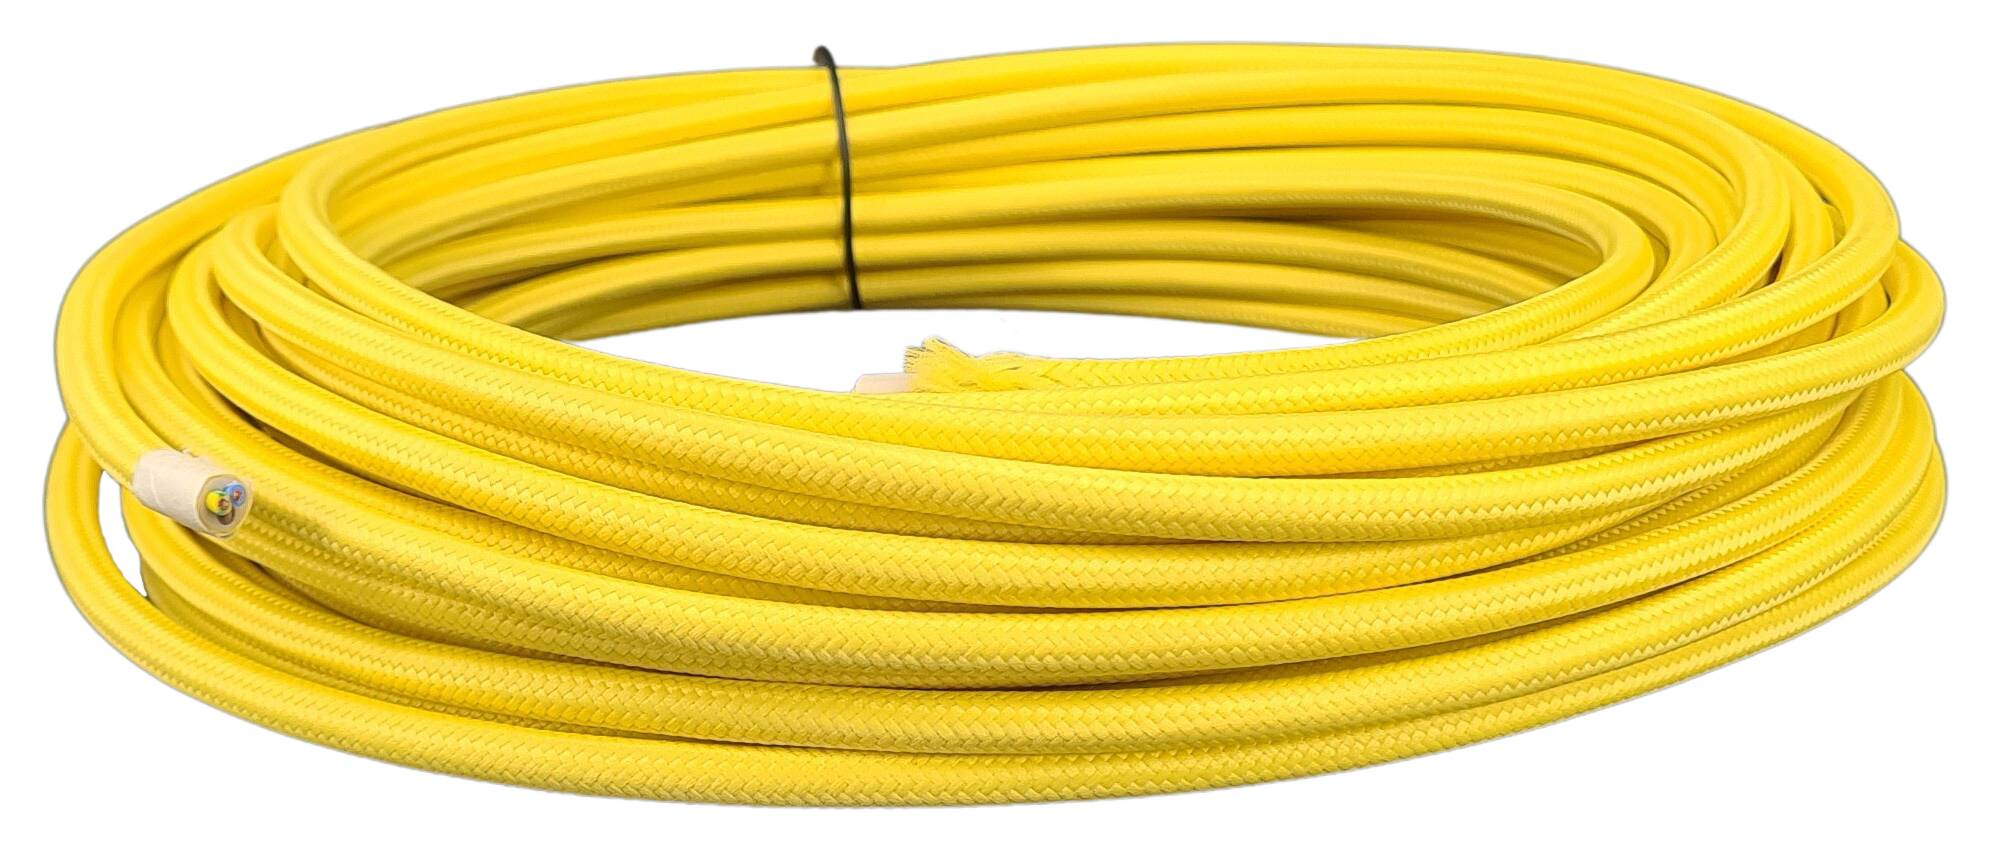 Kabel 3G 0,75 H03VV-F textilummantelt RAL 1018 gelb